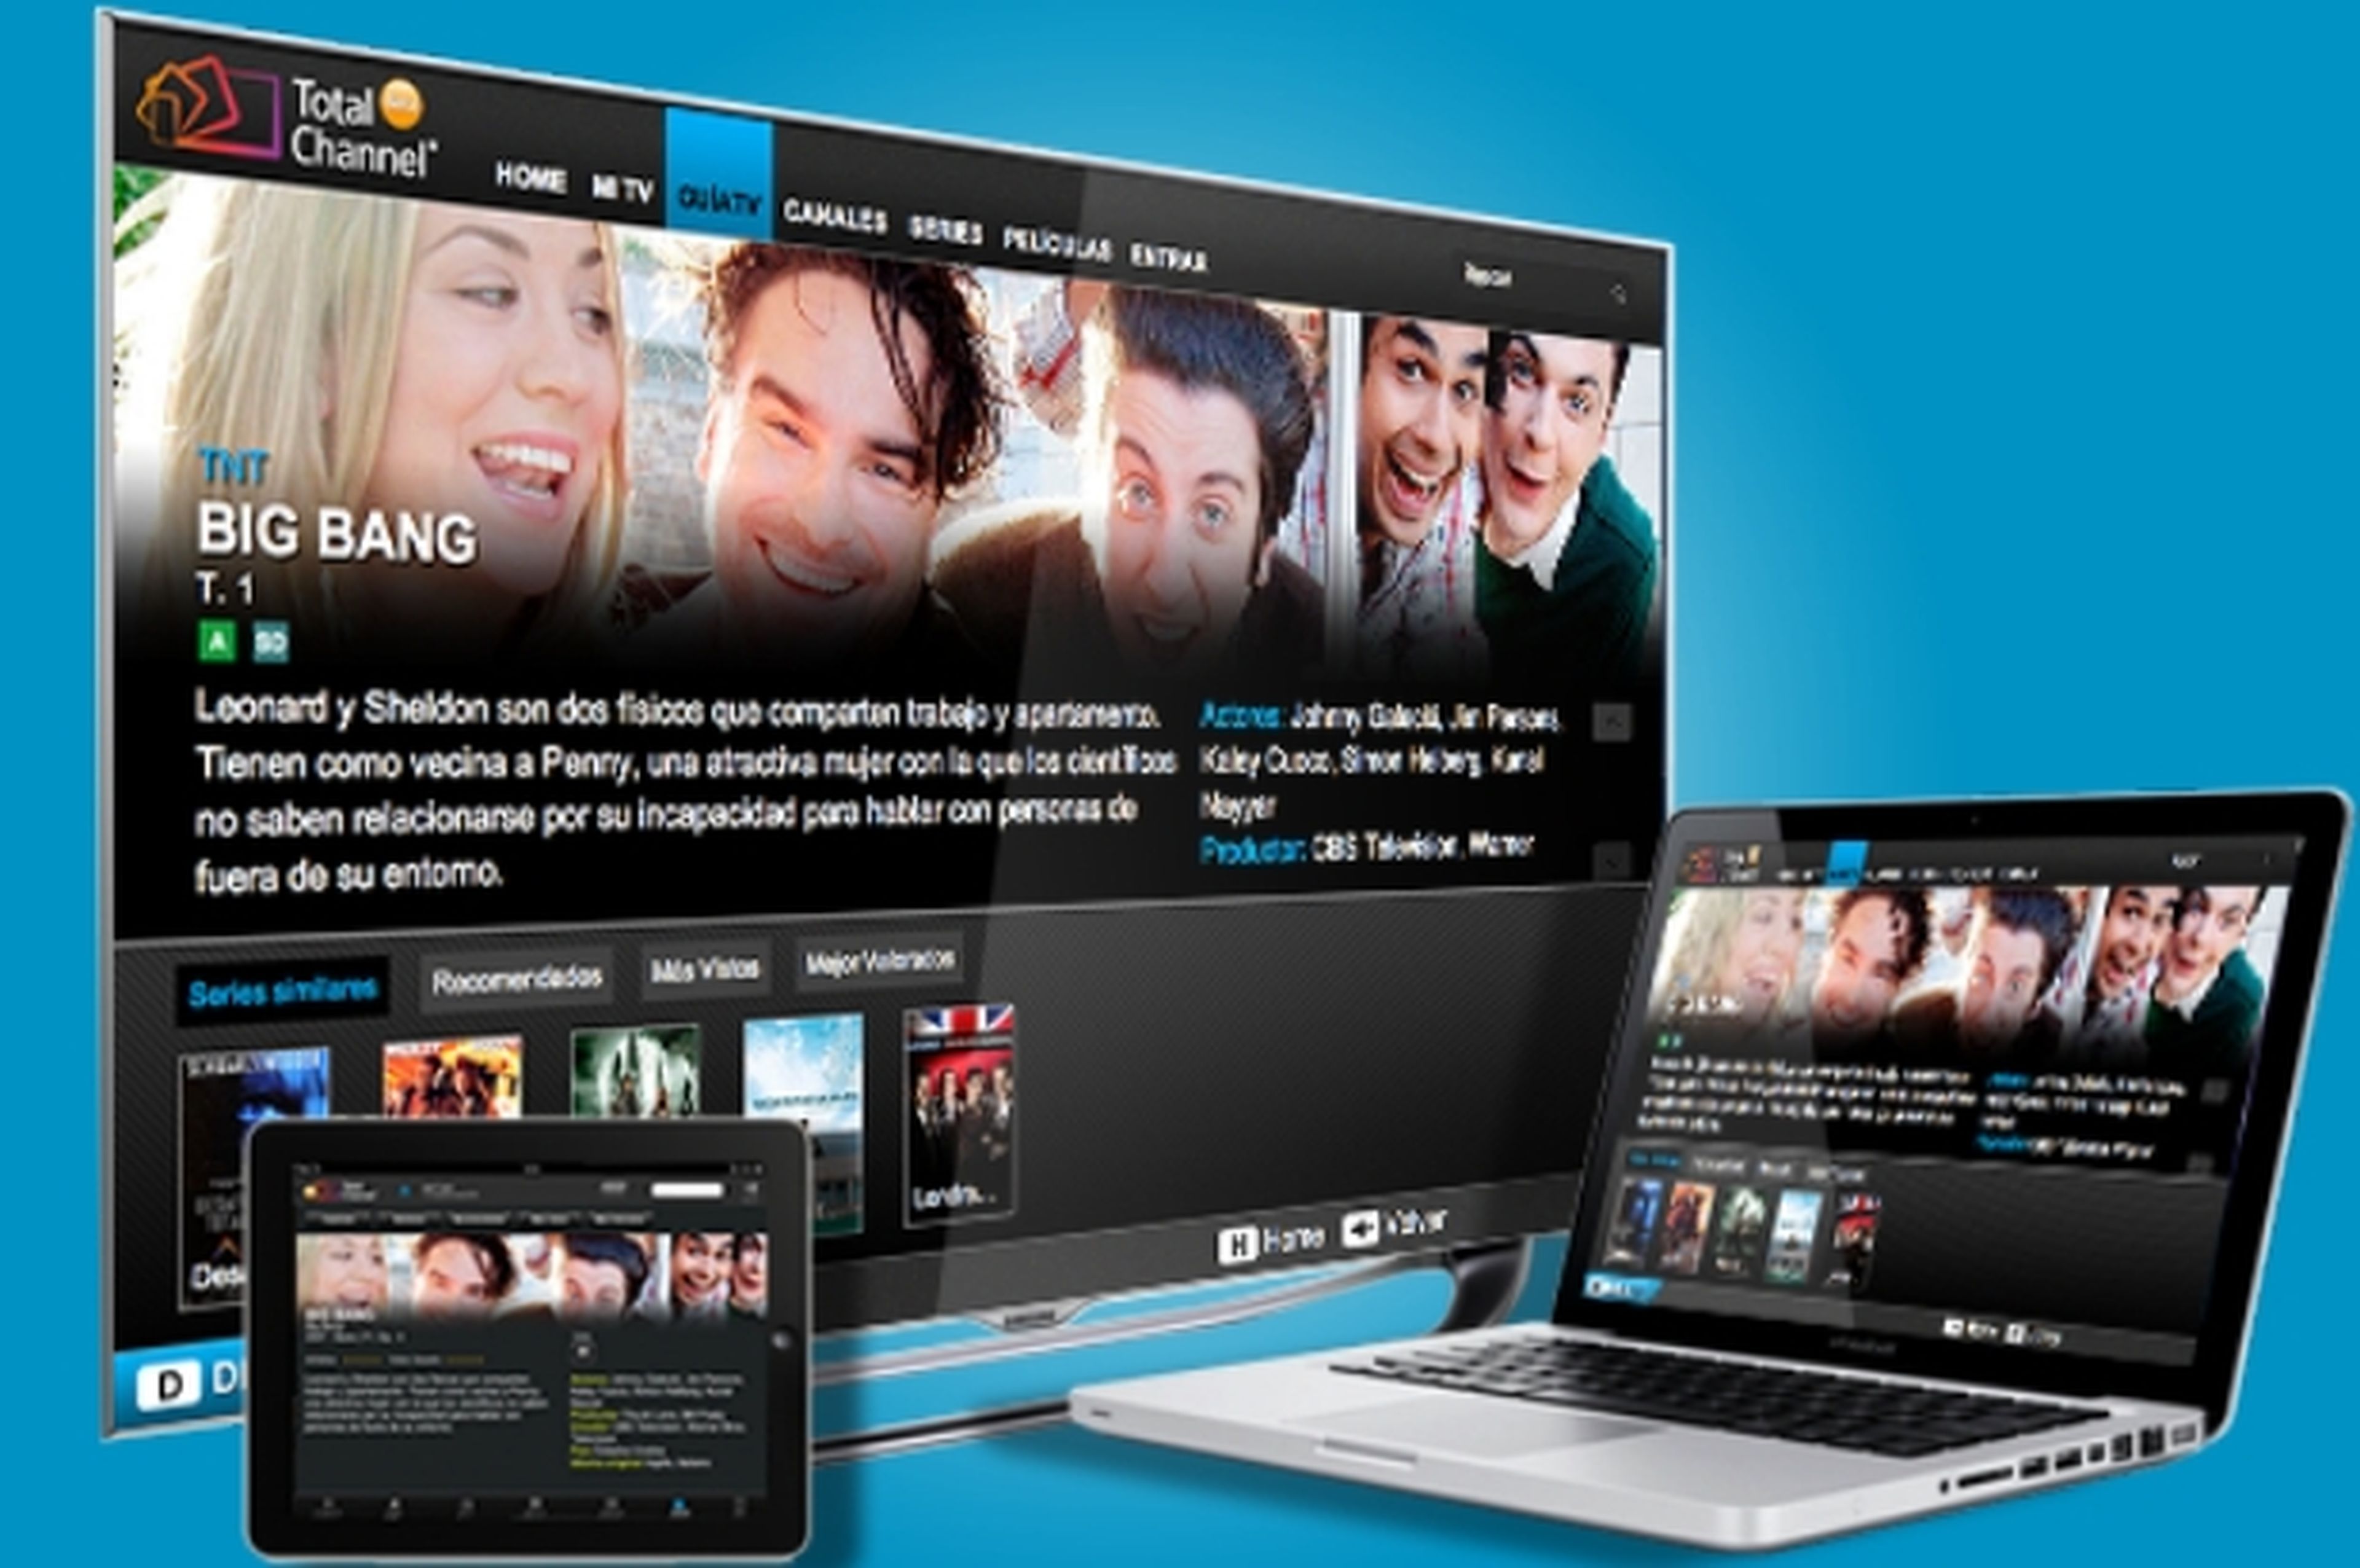 TotalChannel, la plataforma de televisión móvil